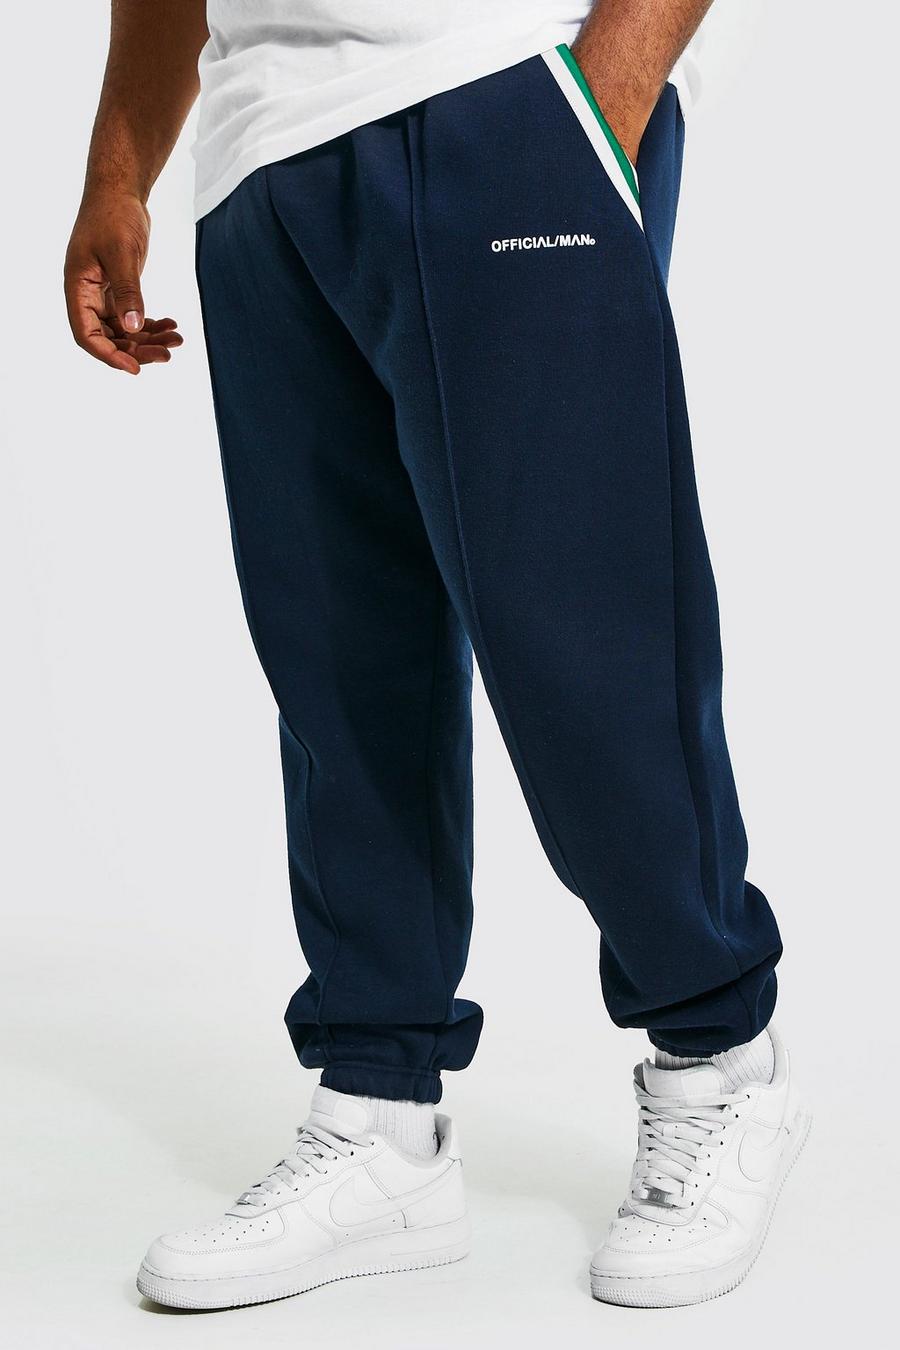 Pantalón deportivo Plus ajustado con bolsillos, franja lateral y alforza, Navy azul marino image number 1